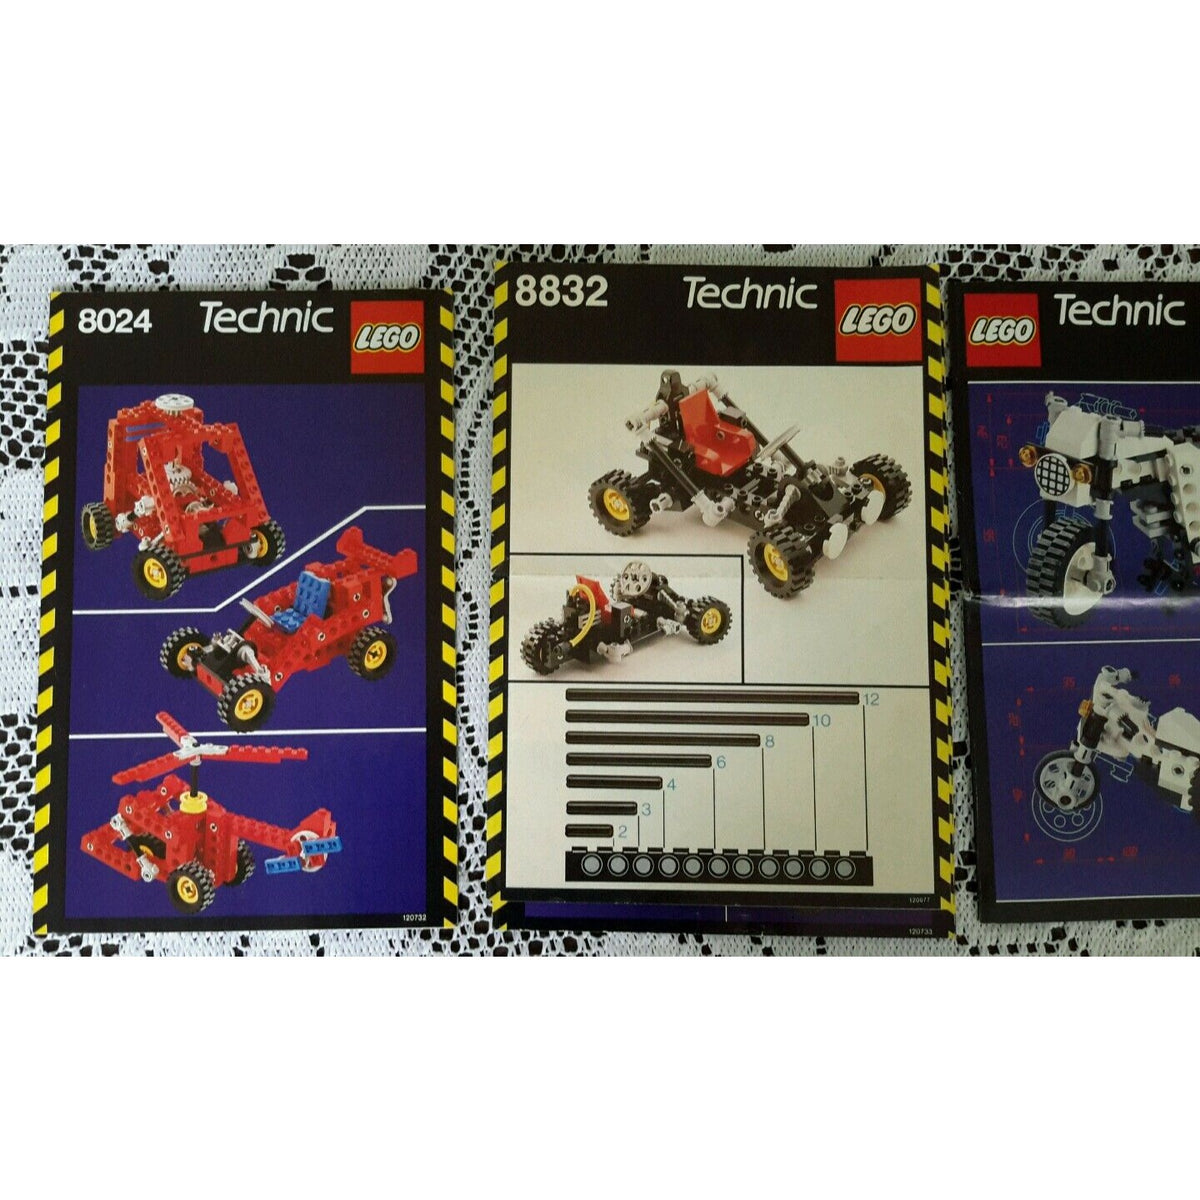 Vejhus Hubert Hudson Ren og skær Legos # 8024/8832/8810/8022 Technic Universal Instructions Books Manua –  Mainely Bargains